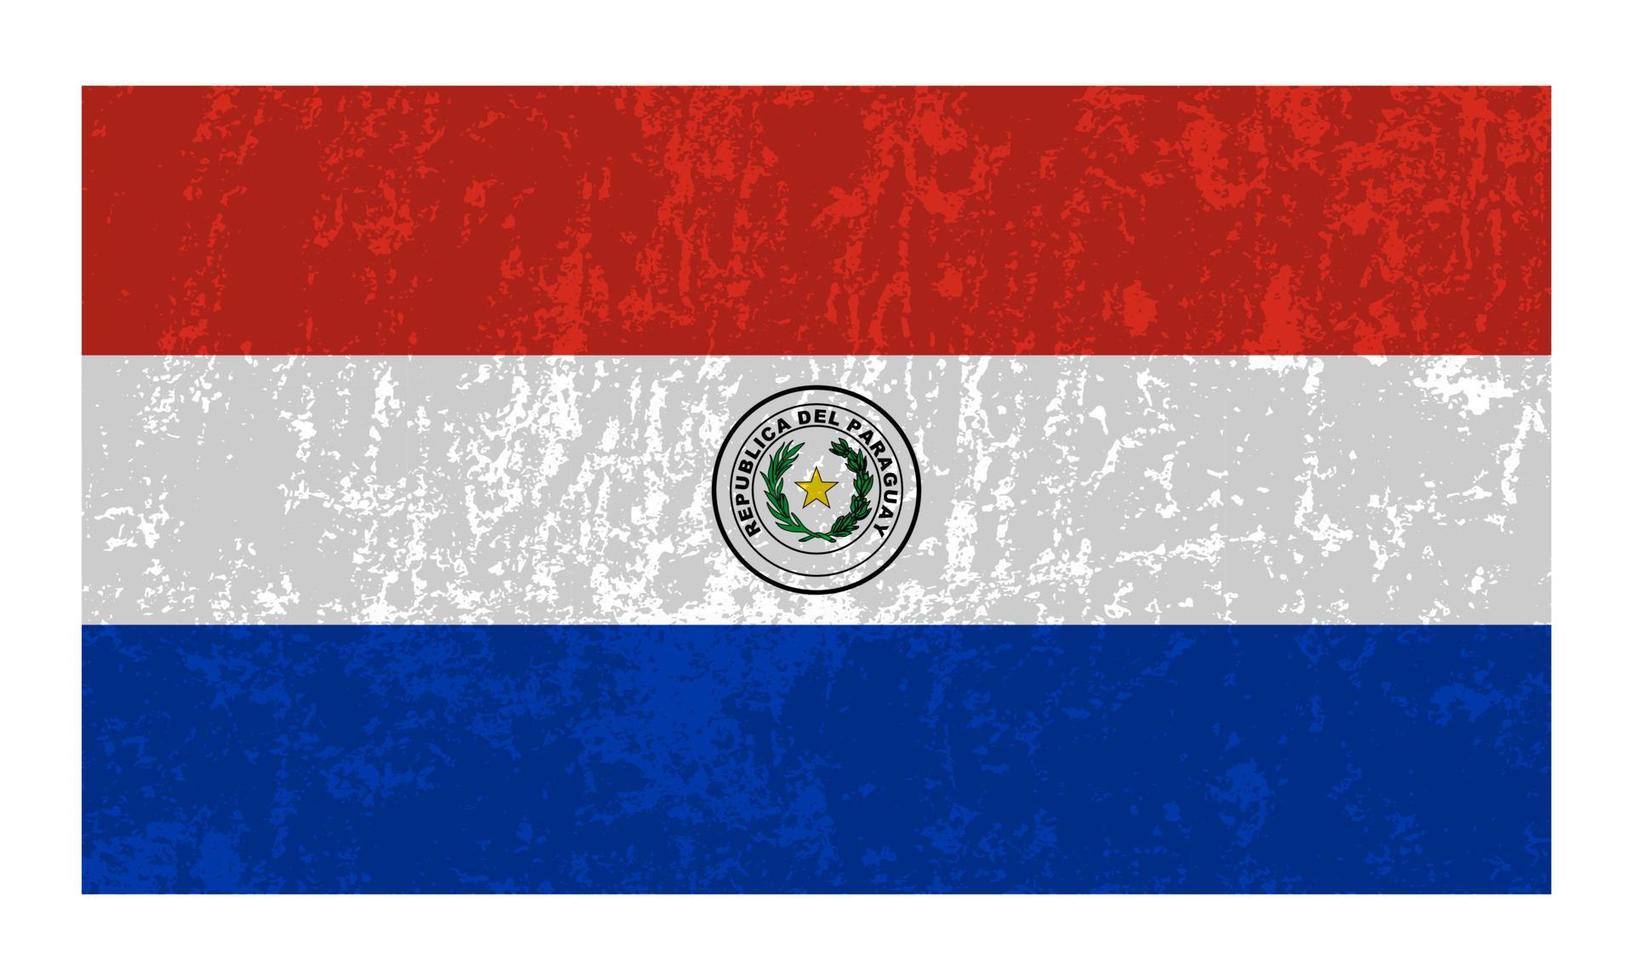 bandeira do paraguai, cores oficiais e proporção. ilustração vetorial. vetor